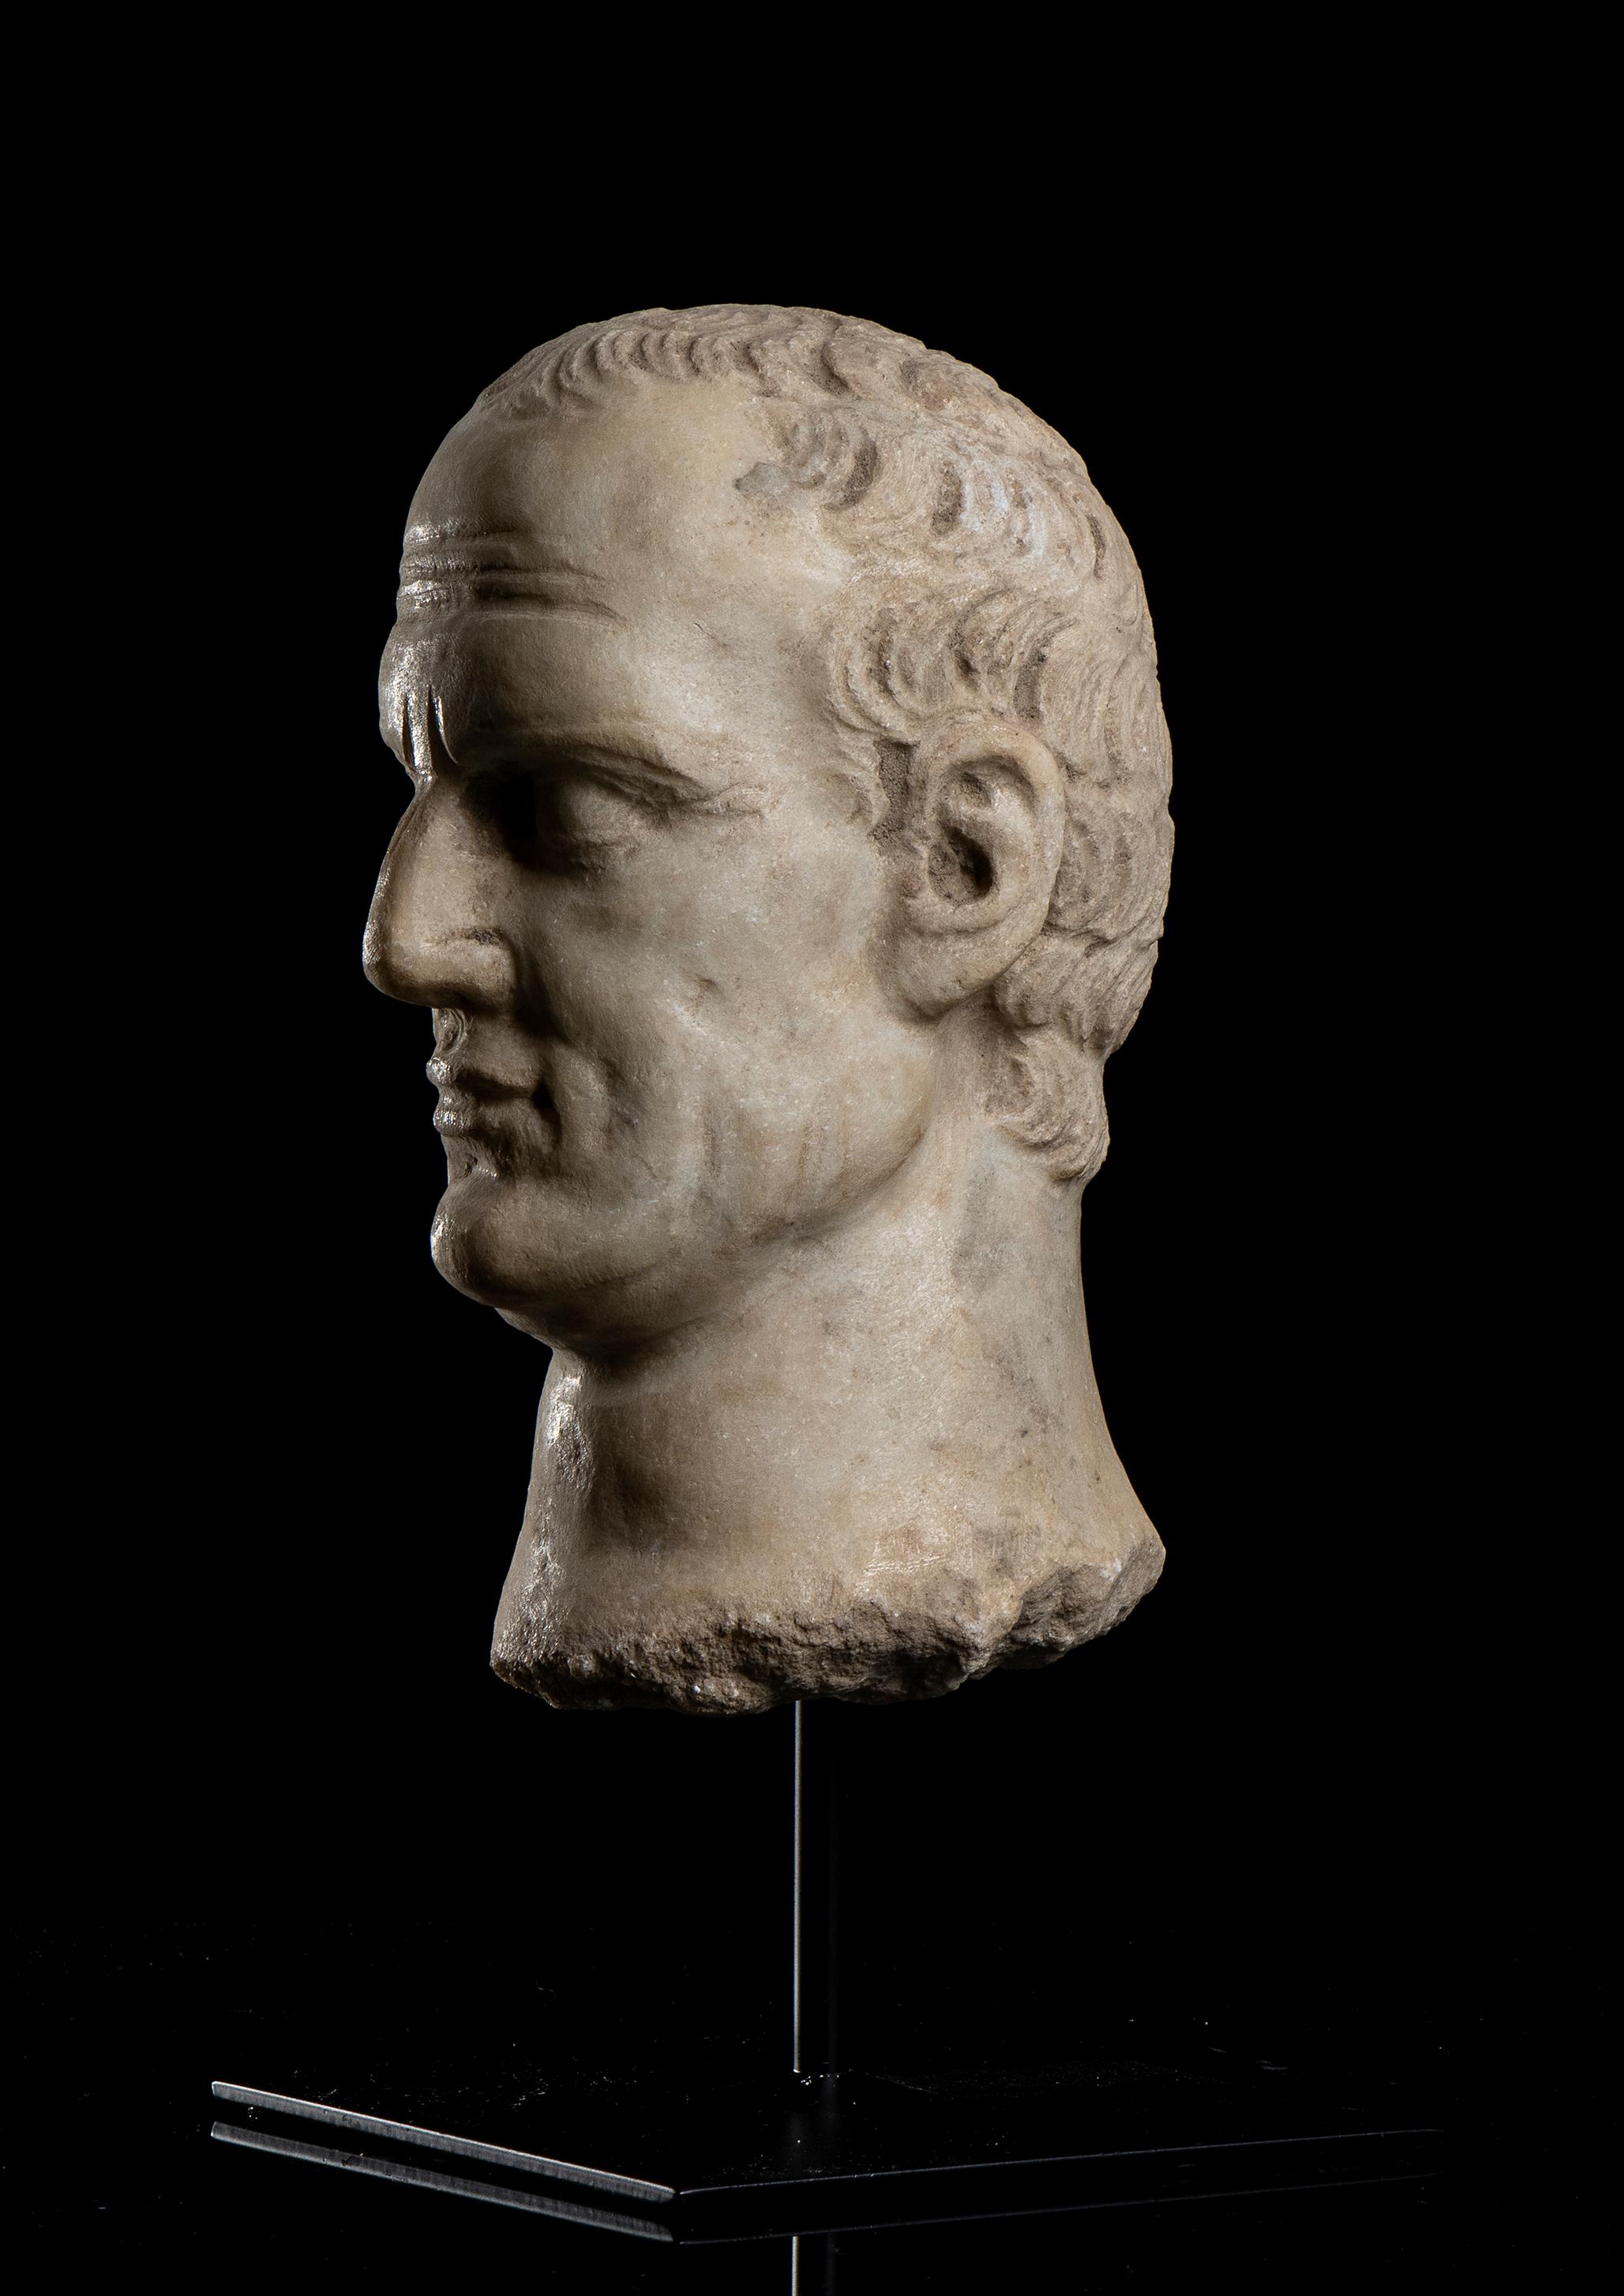 Der Kopf von Jiulis Caesar steht auf einem zentralen Stift auf einem quadratischen Sockel aus schwarzem Metall in einem archäologischen Grand Tour Stil, klassisch römisch geschnitzt in weißem statuarischem Marmor gealtert.
Gaius Julius Cäsar  war